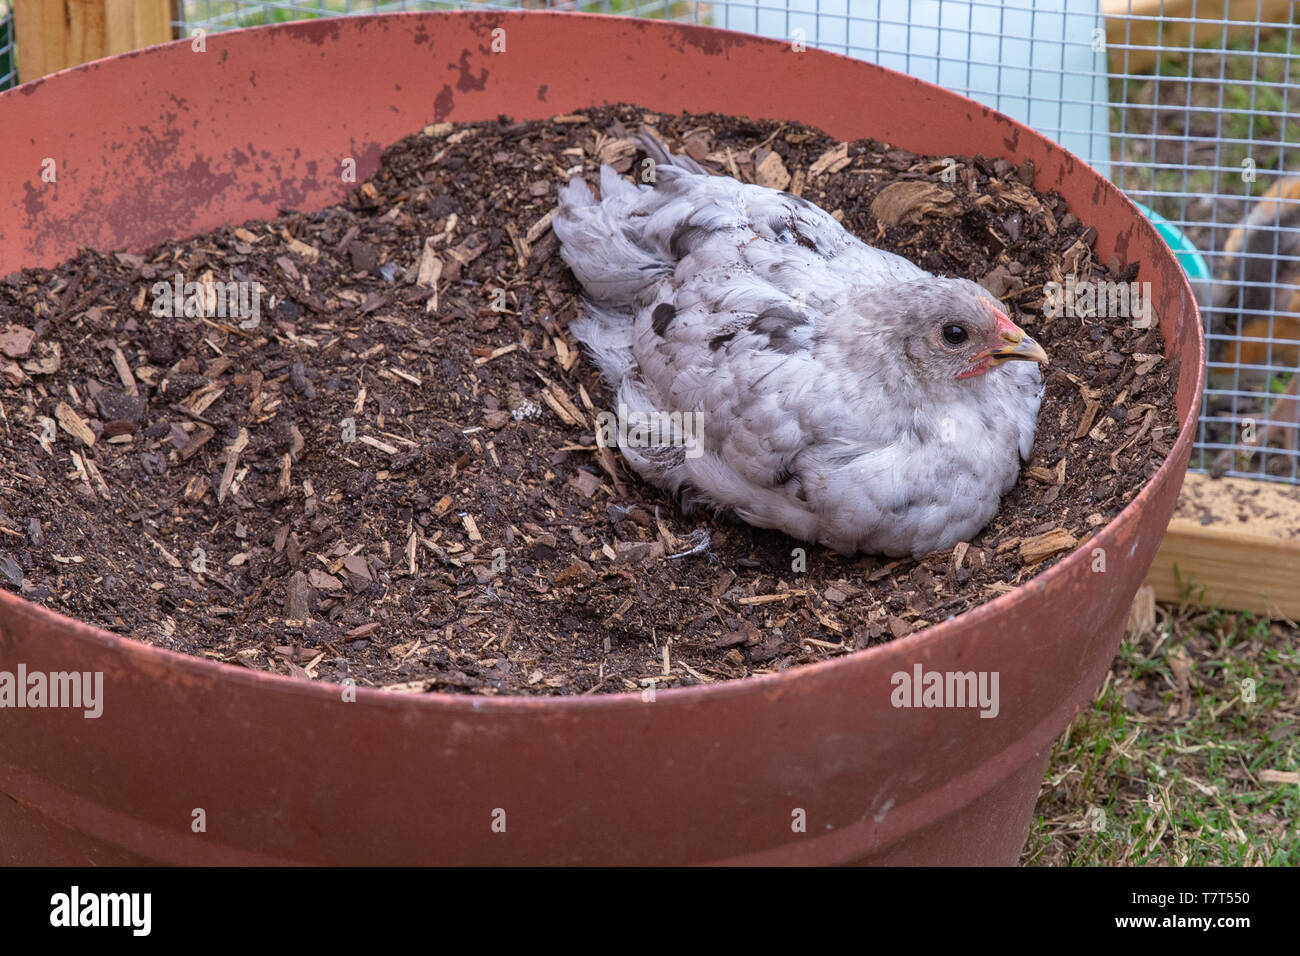 Blanco y negro joven manchada de pollo pet descansando en la suciedad Foto de stock